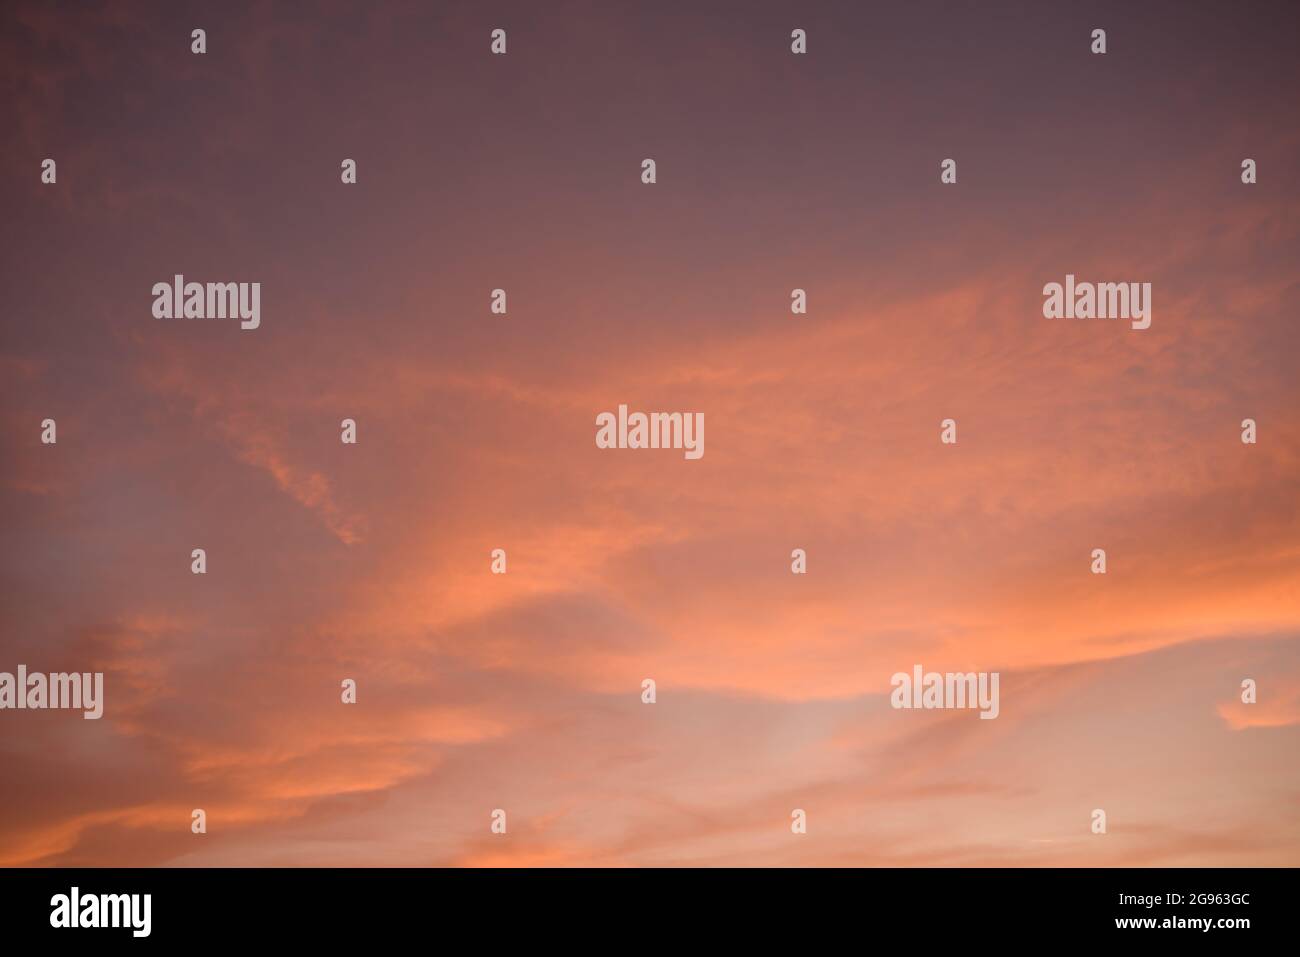 Schöne orange gelb lila Wolken Sonnenuntergang Himmel Ersatz Stock Fotografie. Südkalifornien fabelhafter, wunderbarer und epischer Himmel. Stockfoto